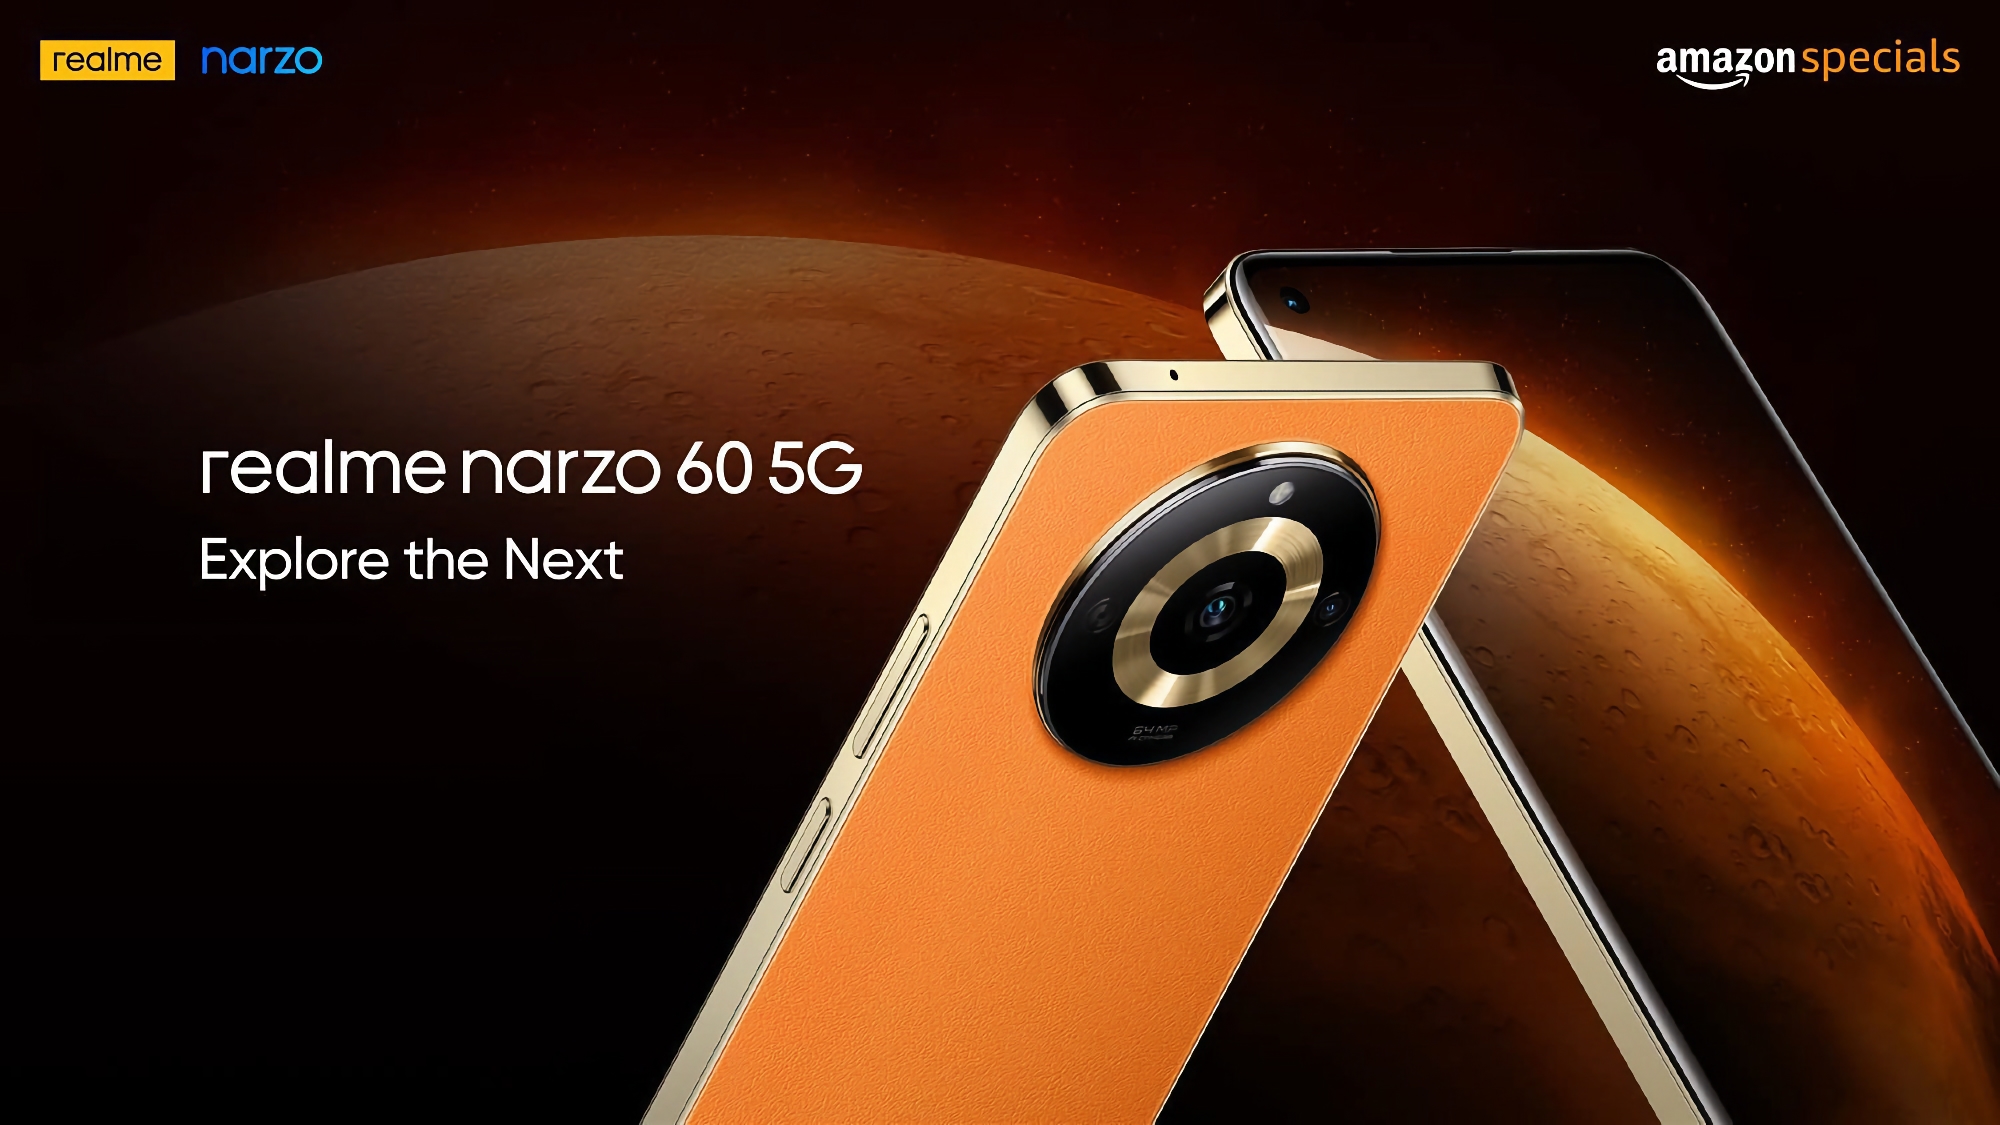 Informator pokazał, jak będzie wyglądał Narzo 60 5G: smartfon z płaskim ekranem 90 Hz, aparatem 64 MP i baterią 5000 mAh